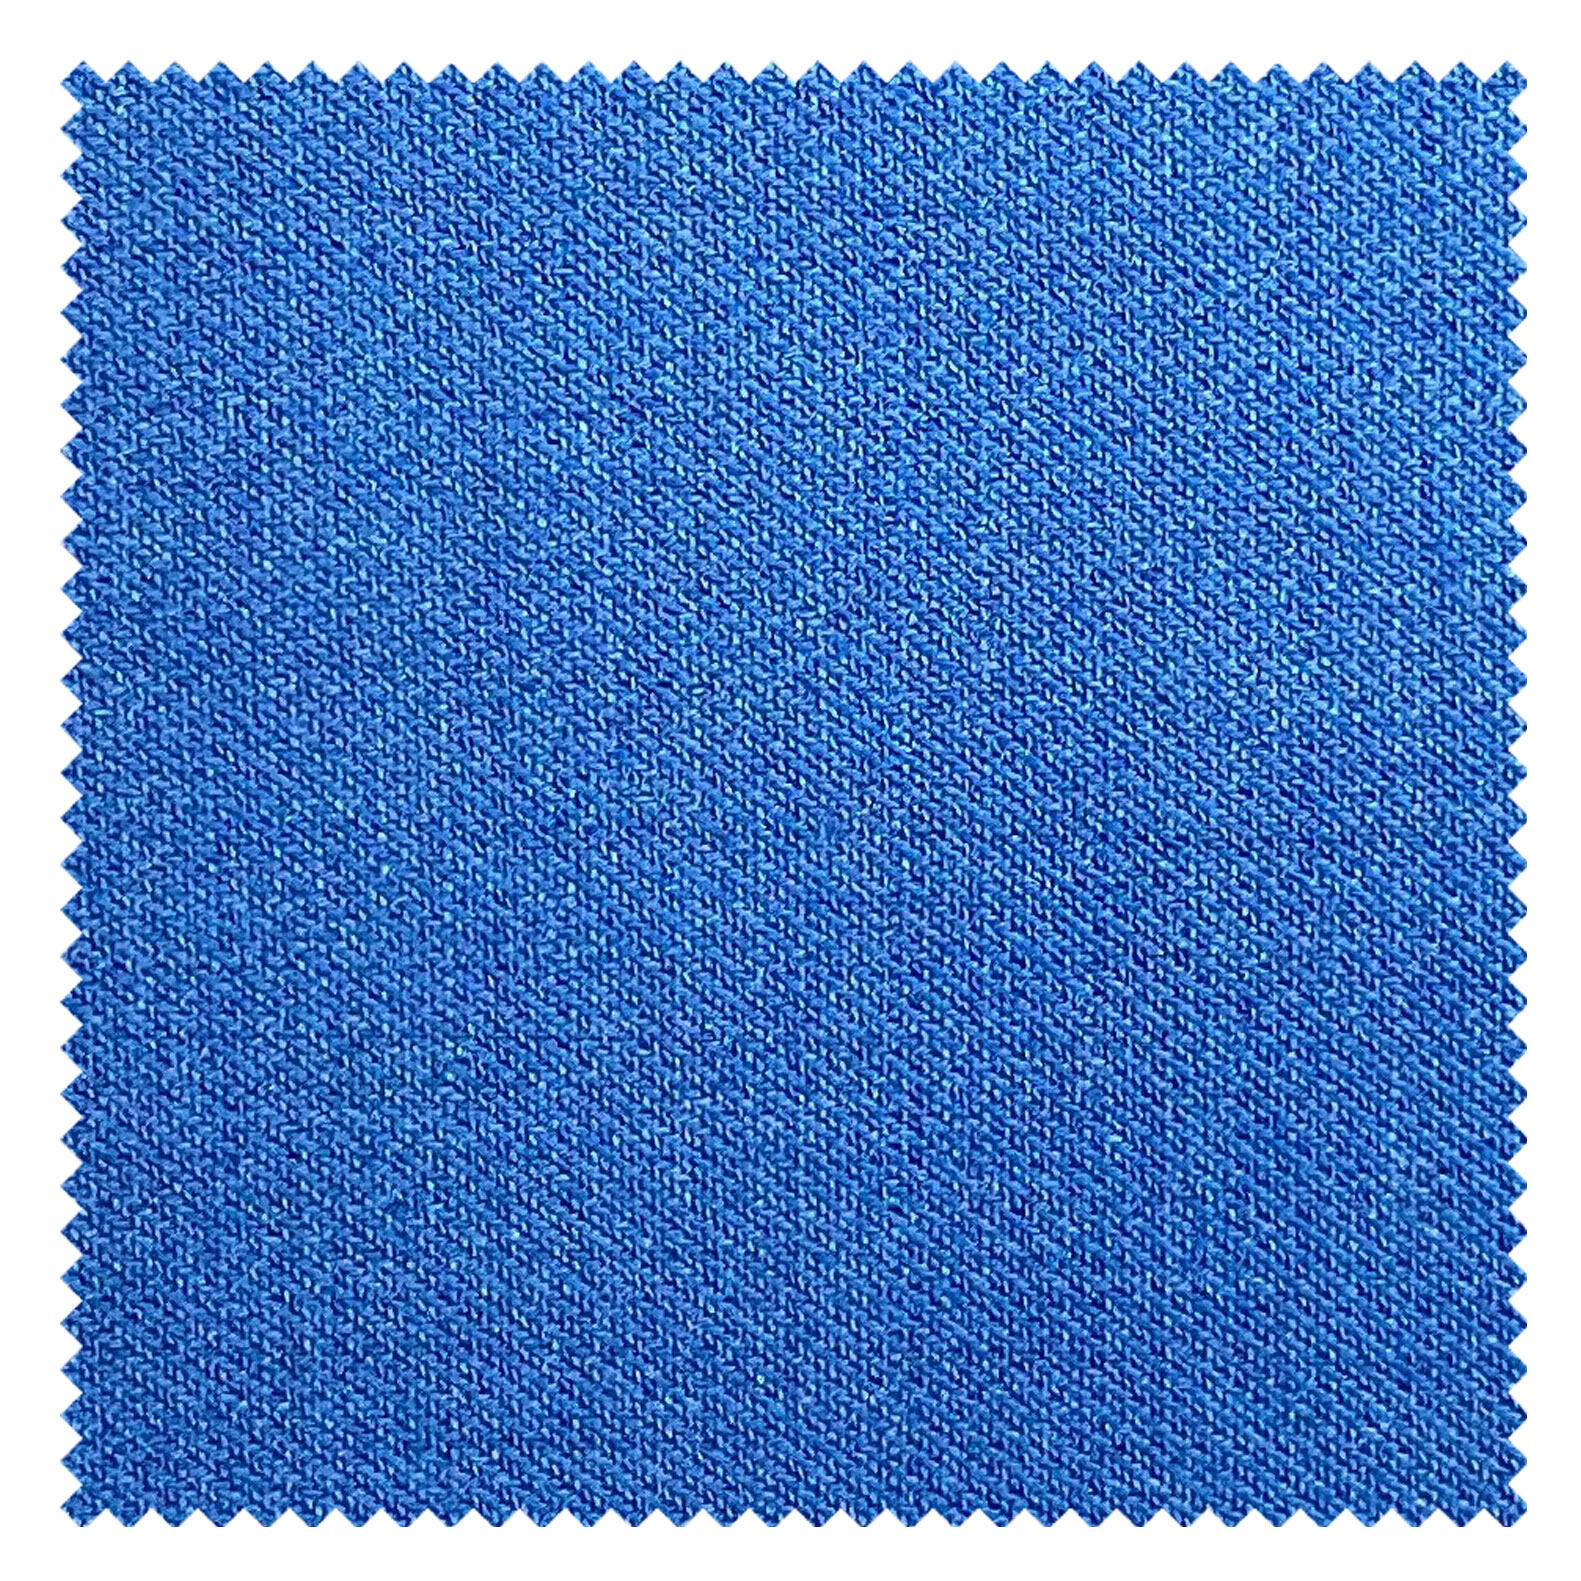 KINGMAN Silk Wool Fabric HAMPSTEAD ZANOTTI COBALT ผ้าตัดชุดสูท สีน้ำเงินสด กางเกง ผู้ชาย สีกากี ผ้าตัดเสื้อ ยูนิฟอร์ม ผ้าวูล ผ้าคุณภาพดี กว้าง 60 นิ้ว ยาว 1 เมตร